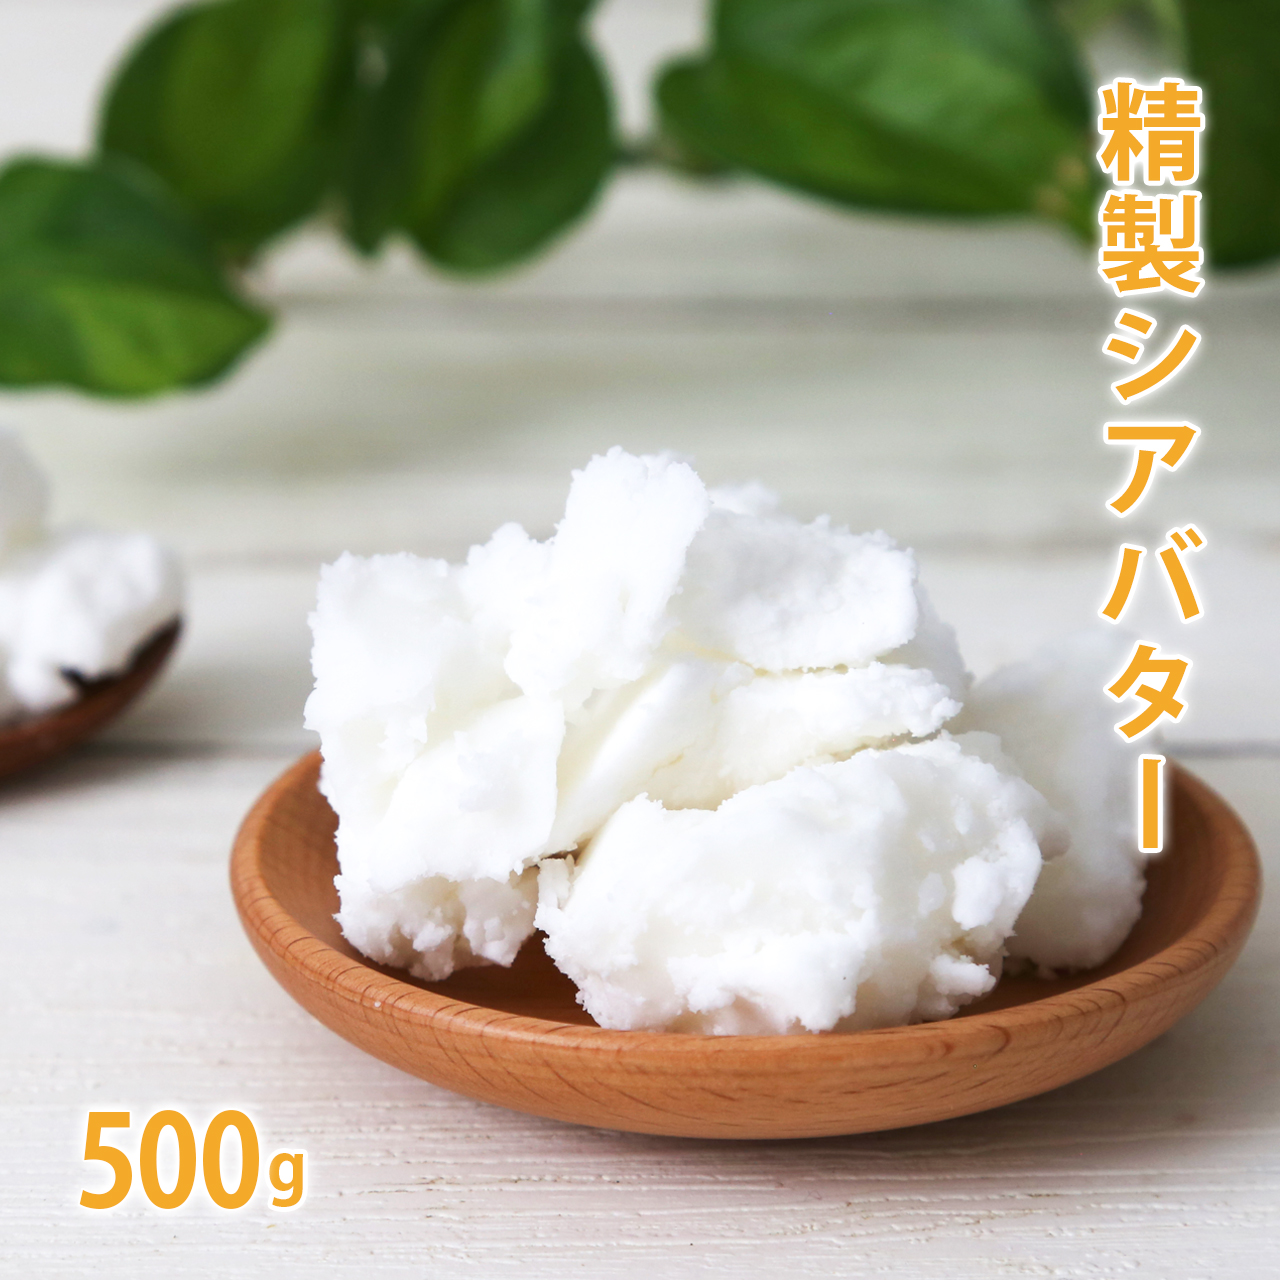 手作り石鹸 手作りコスメ 手作り化粧品に欠かせない 植物バター シアバター シア脂 500g 推奨 マーケティング 精製 精製シアバター